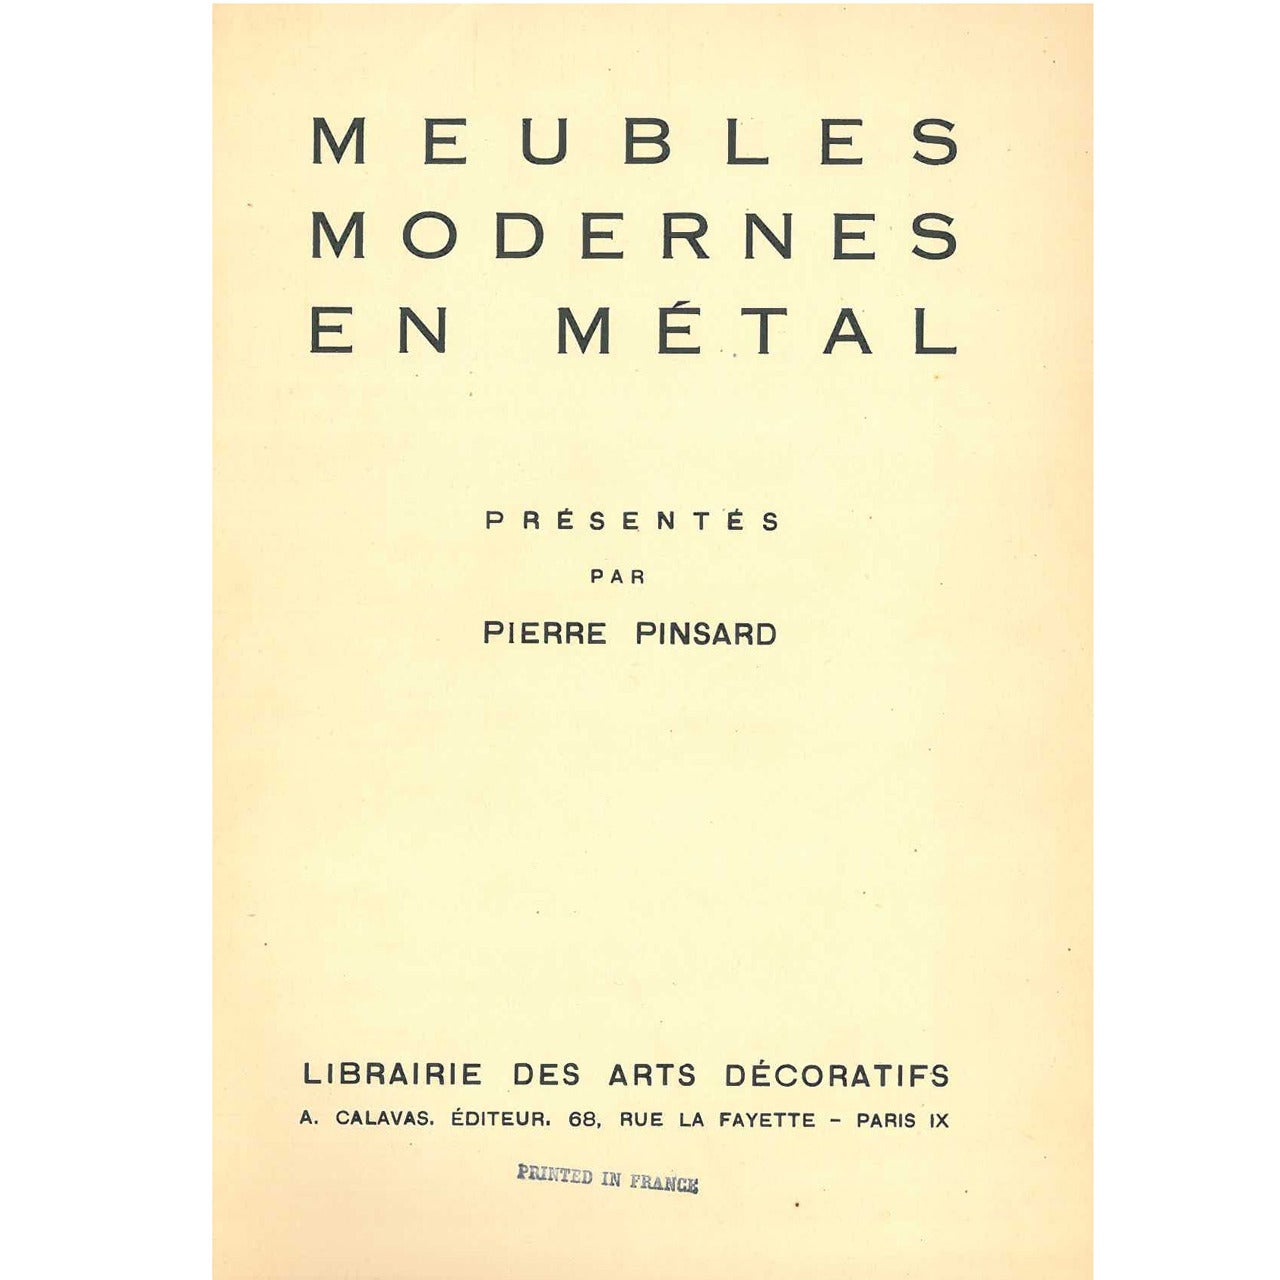 "Meubles Modernes en Metal" Folio Presented by Pierre Pinsard